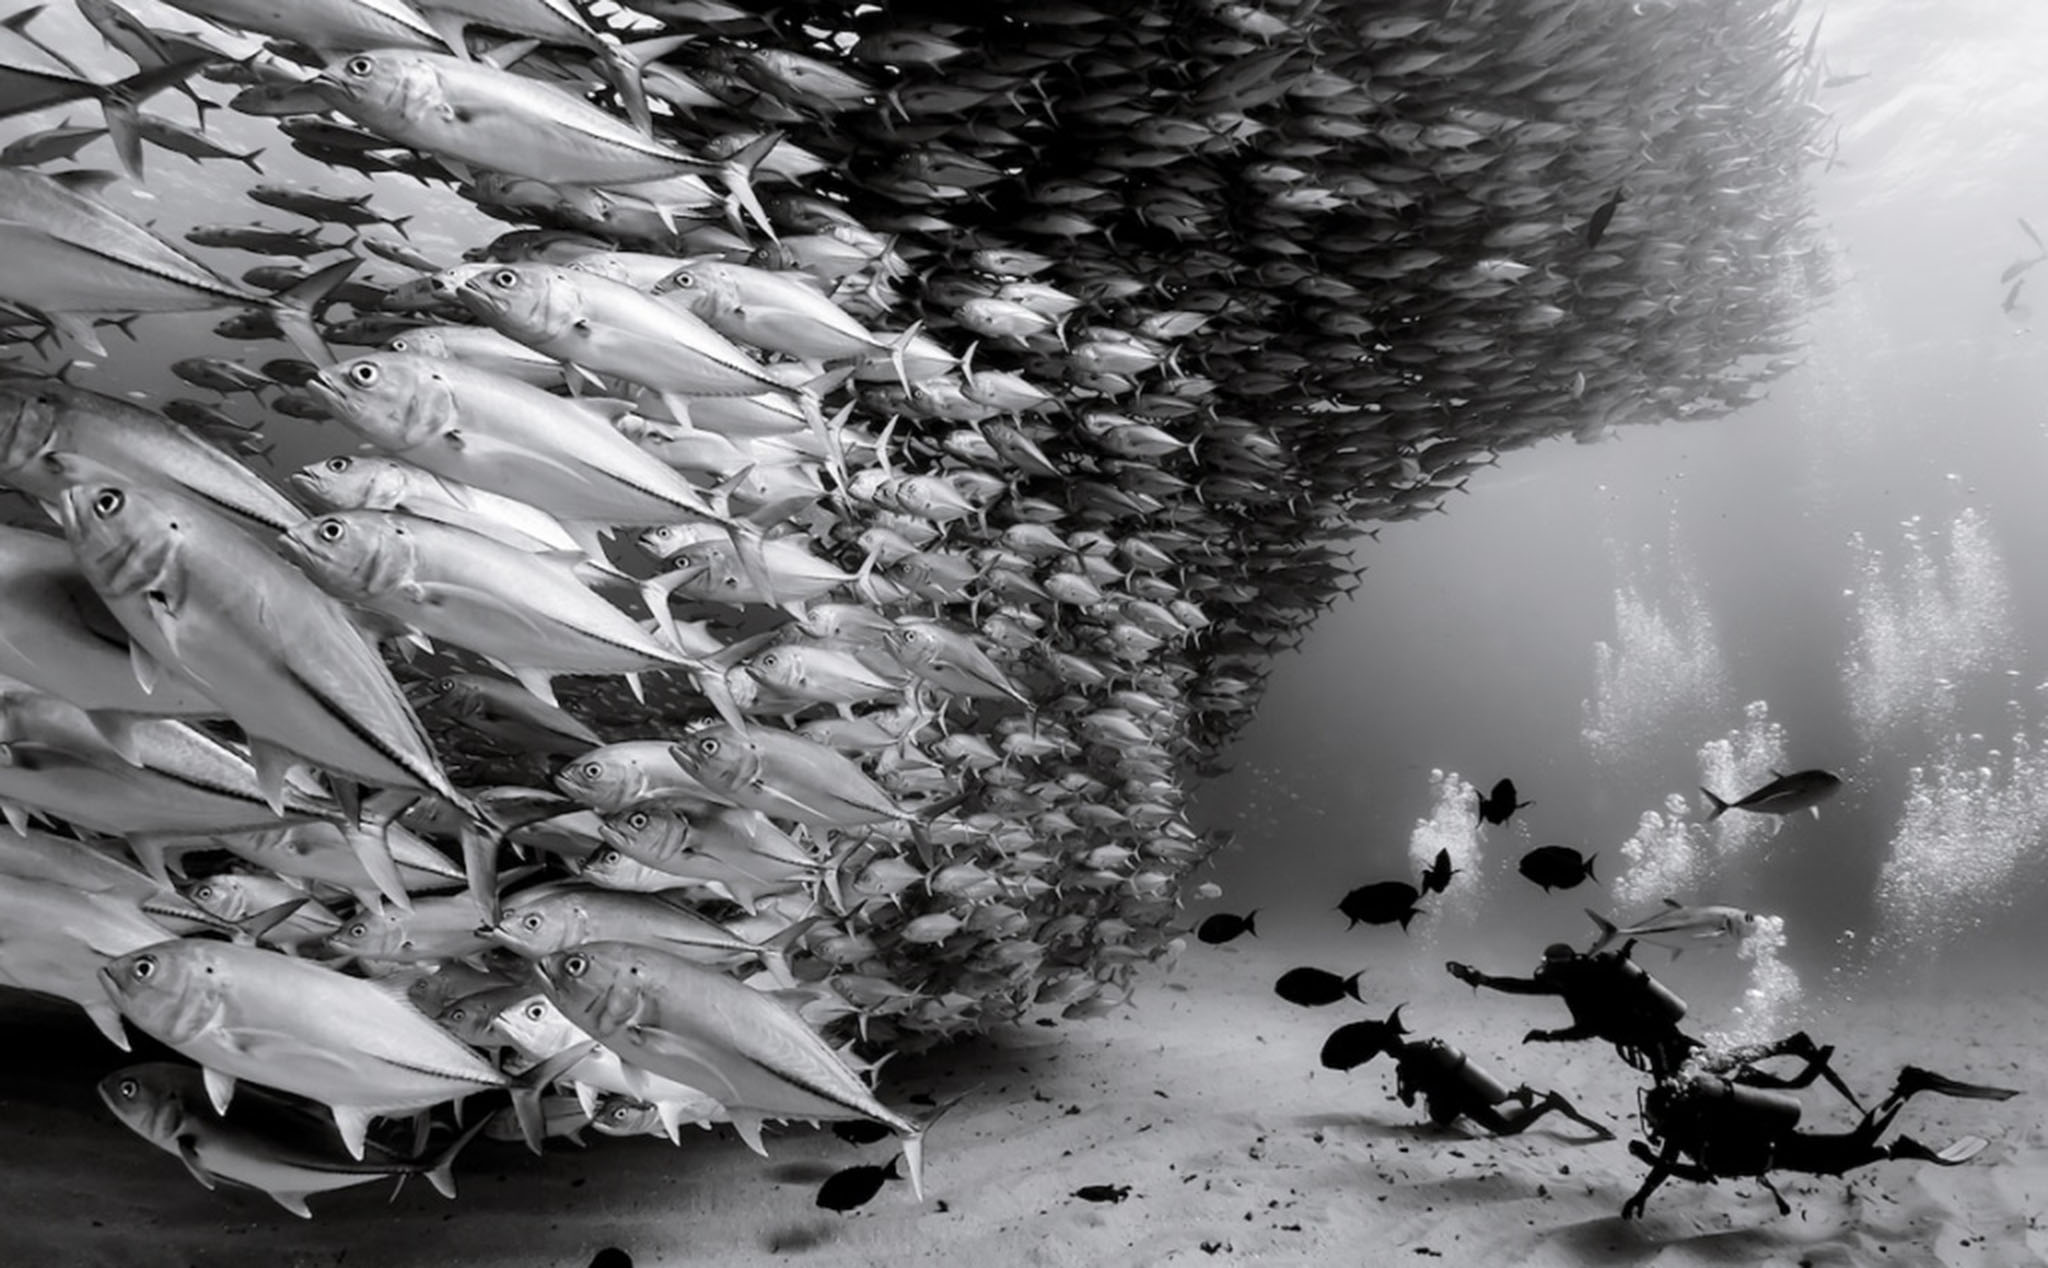 Tác giả chụp bộ ảnh đen trắng thế giới đại dương suốt 30 năm kể lại quá trình thực hiện